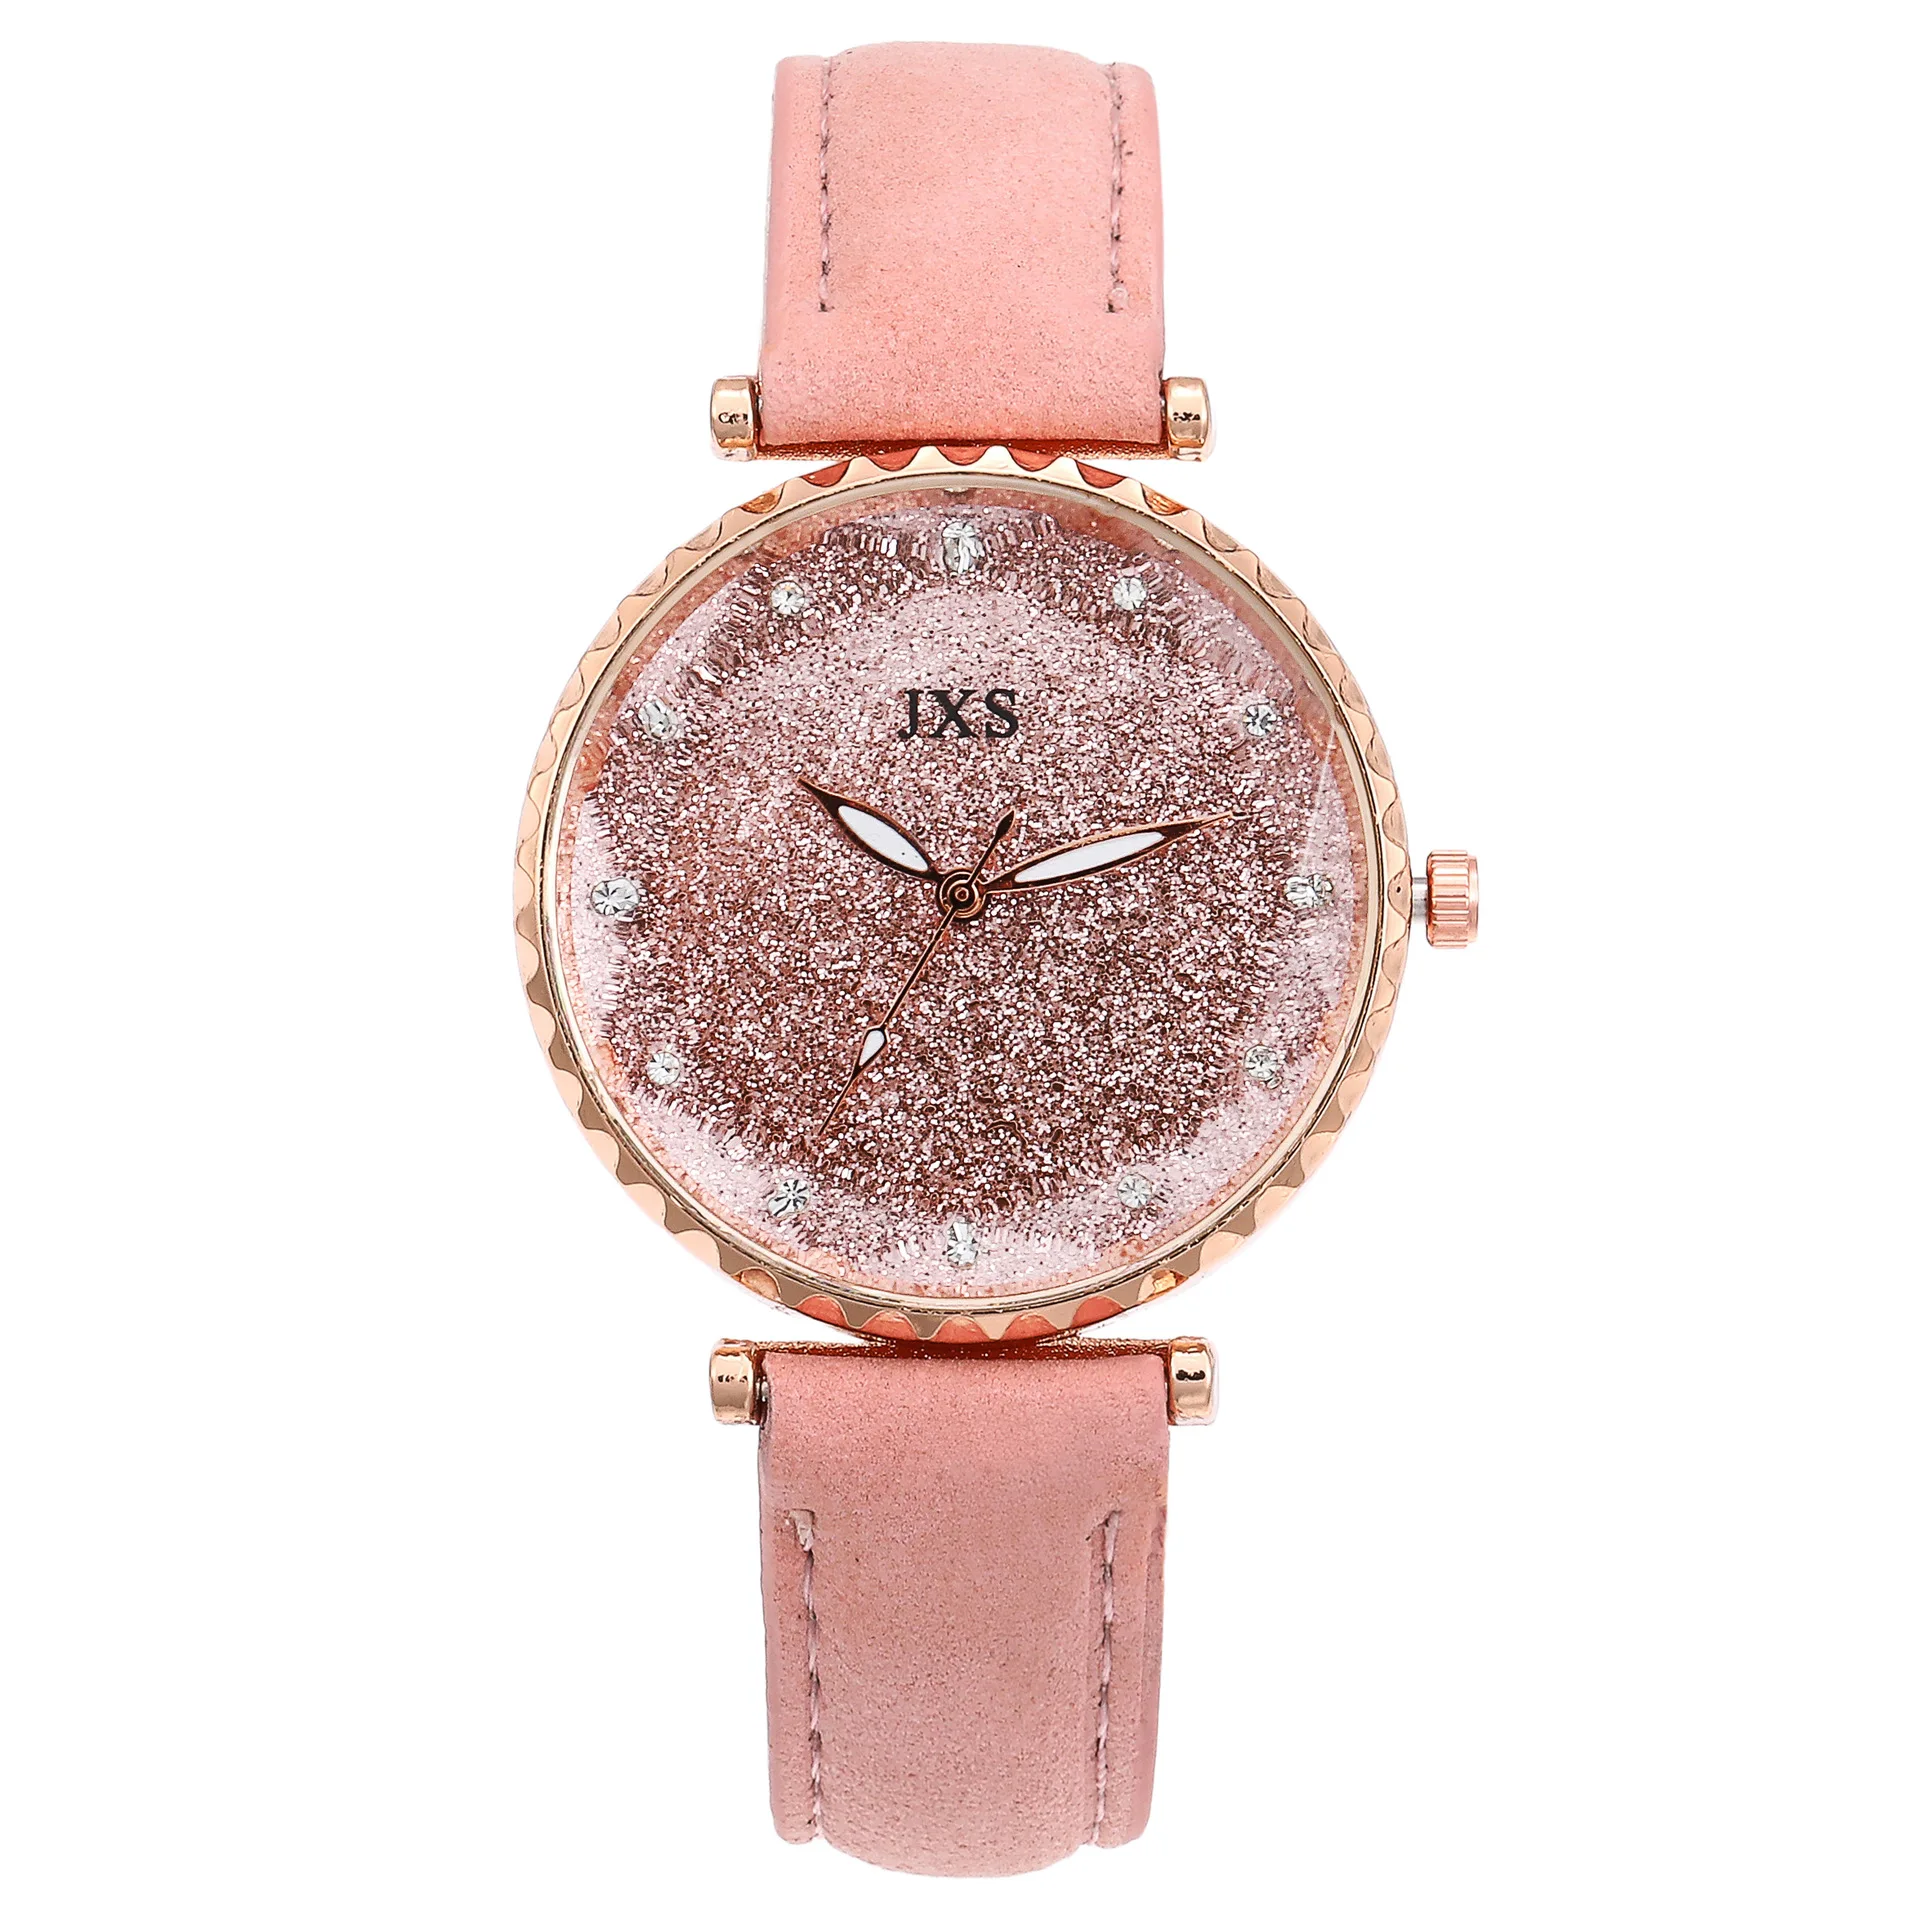 Классическая Звезда украшение алмаз весы детские наручные часы для учеников модный тренд PU благородный темперамент стол для девочек часы - Цвет: Розовый